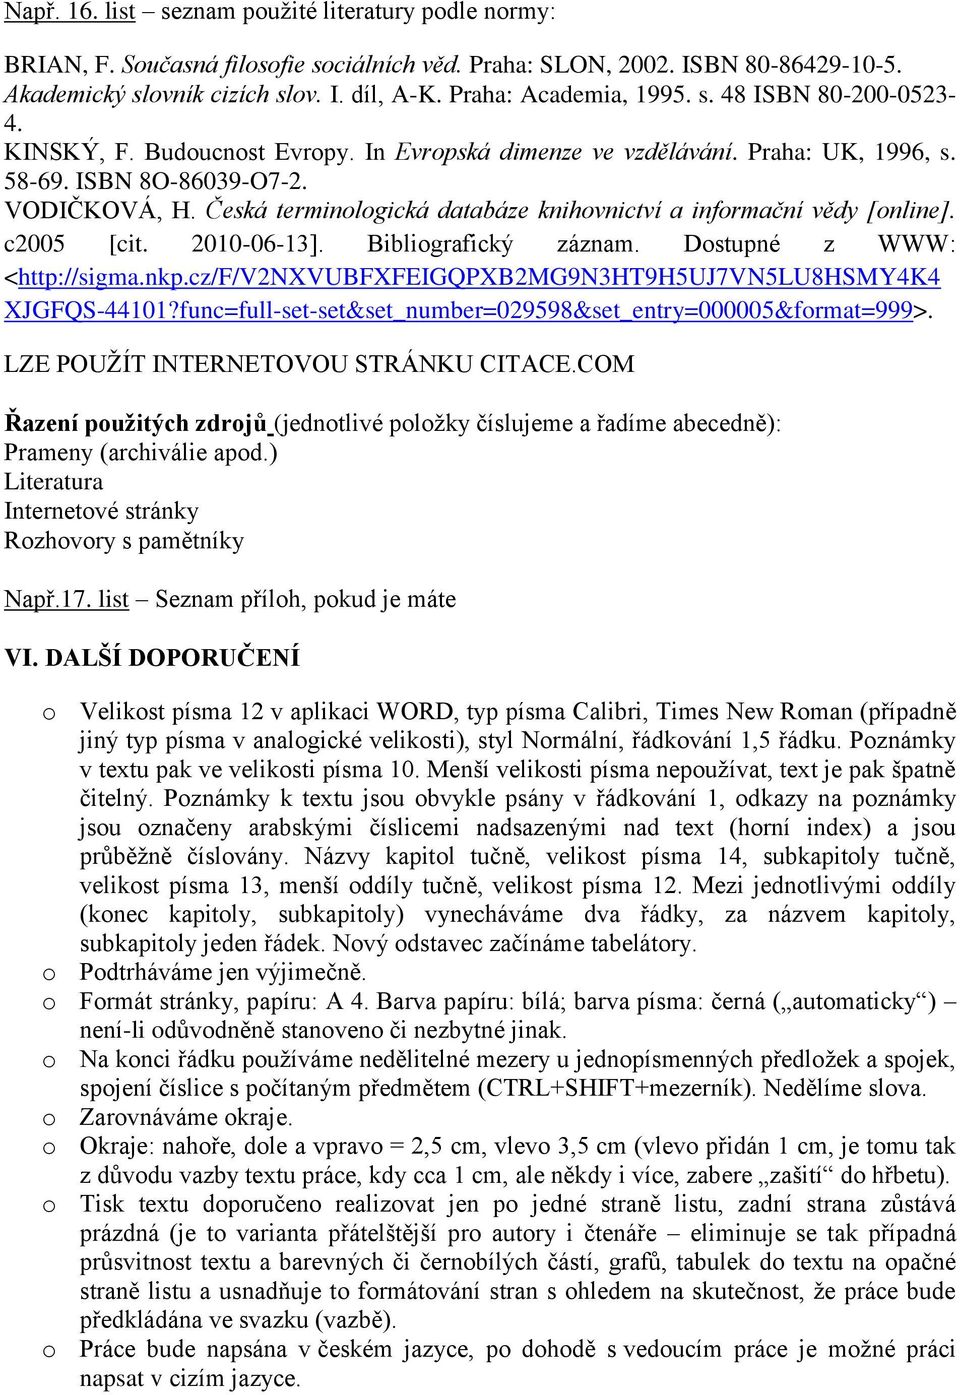 Česká terminologická databáze knihovnictví a informační vědy [online]. c2005 [cit. 2010-06-13]. Bibliografický záznam. Dostupné z WWW: <http://sigma.nkp.